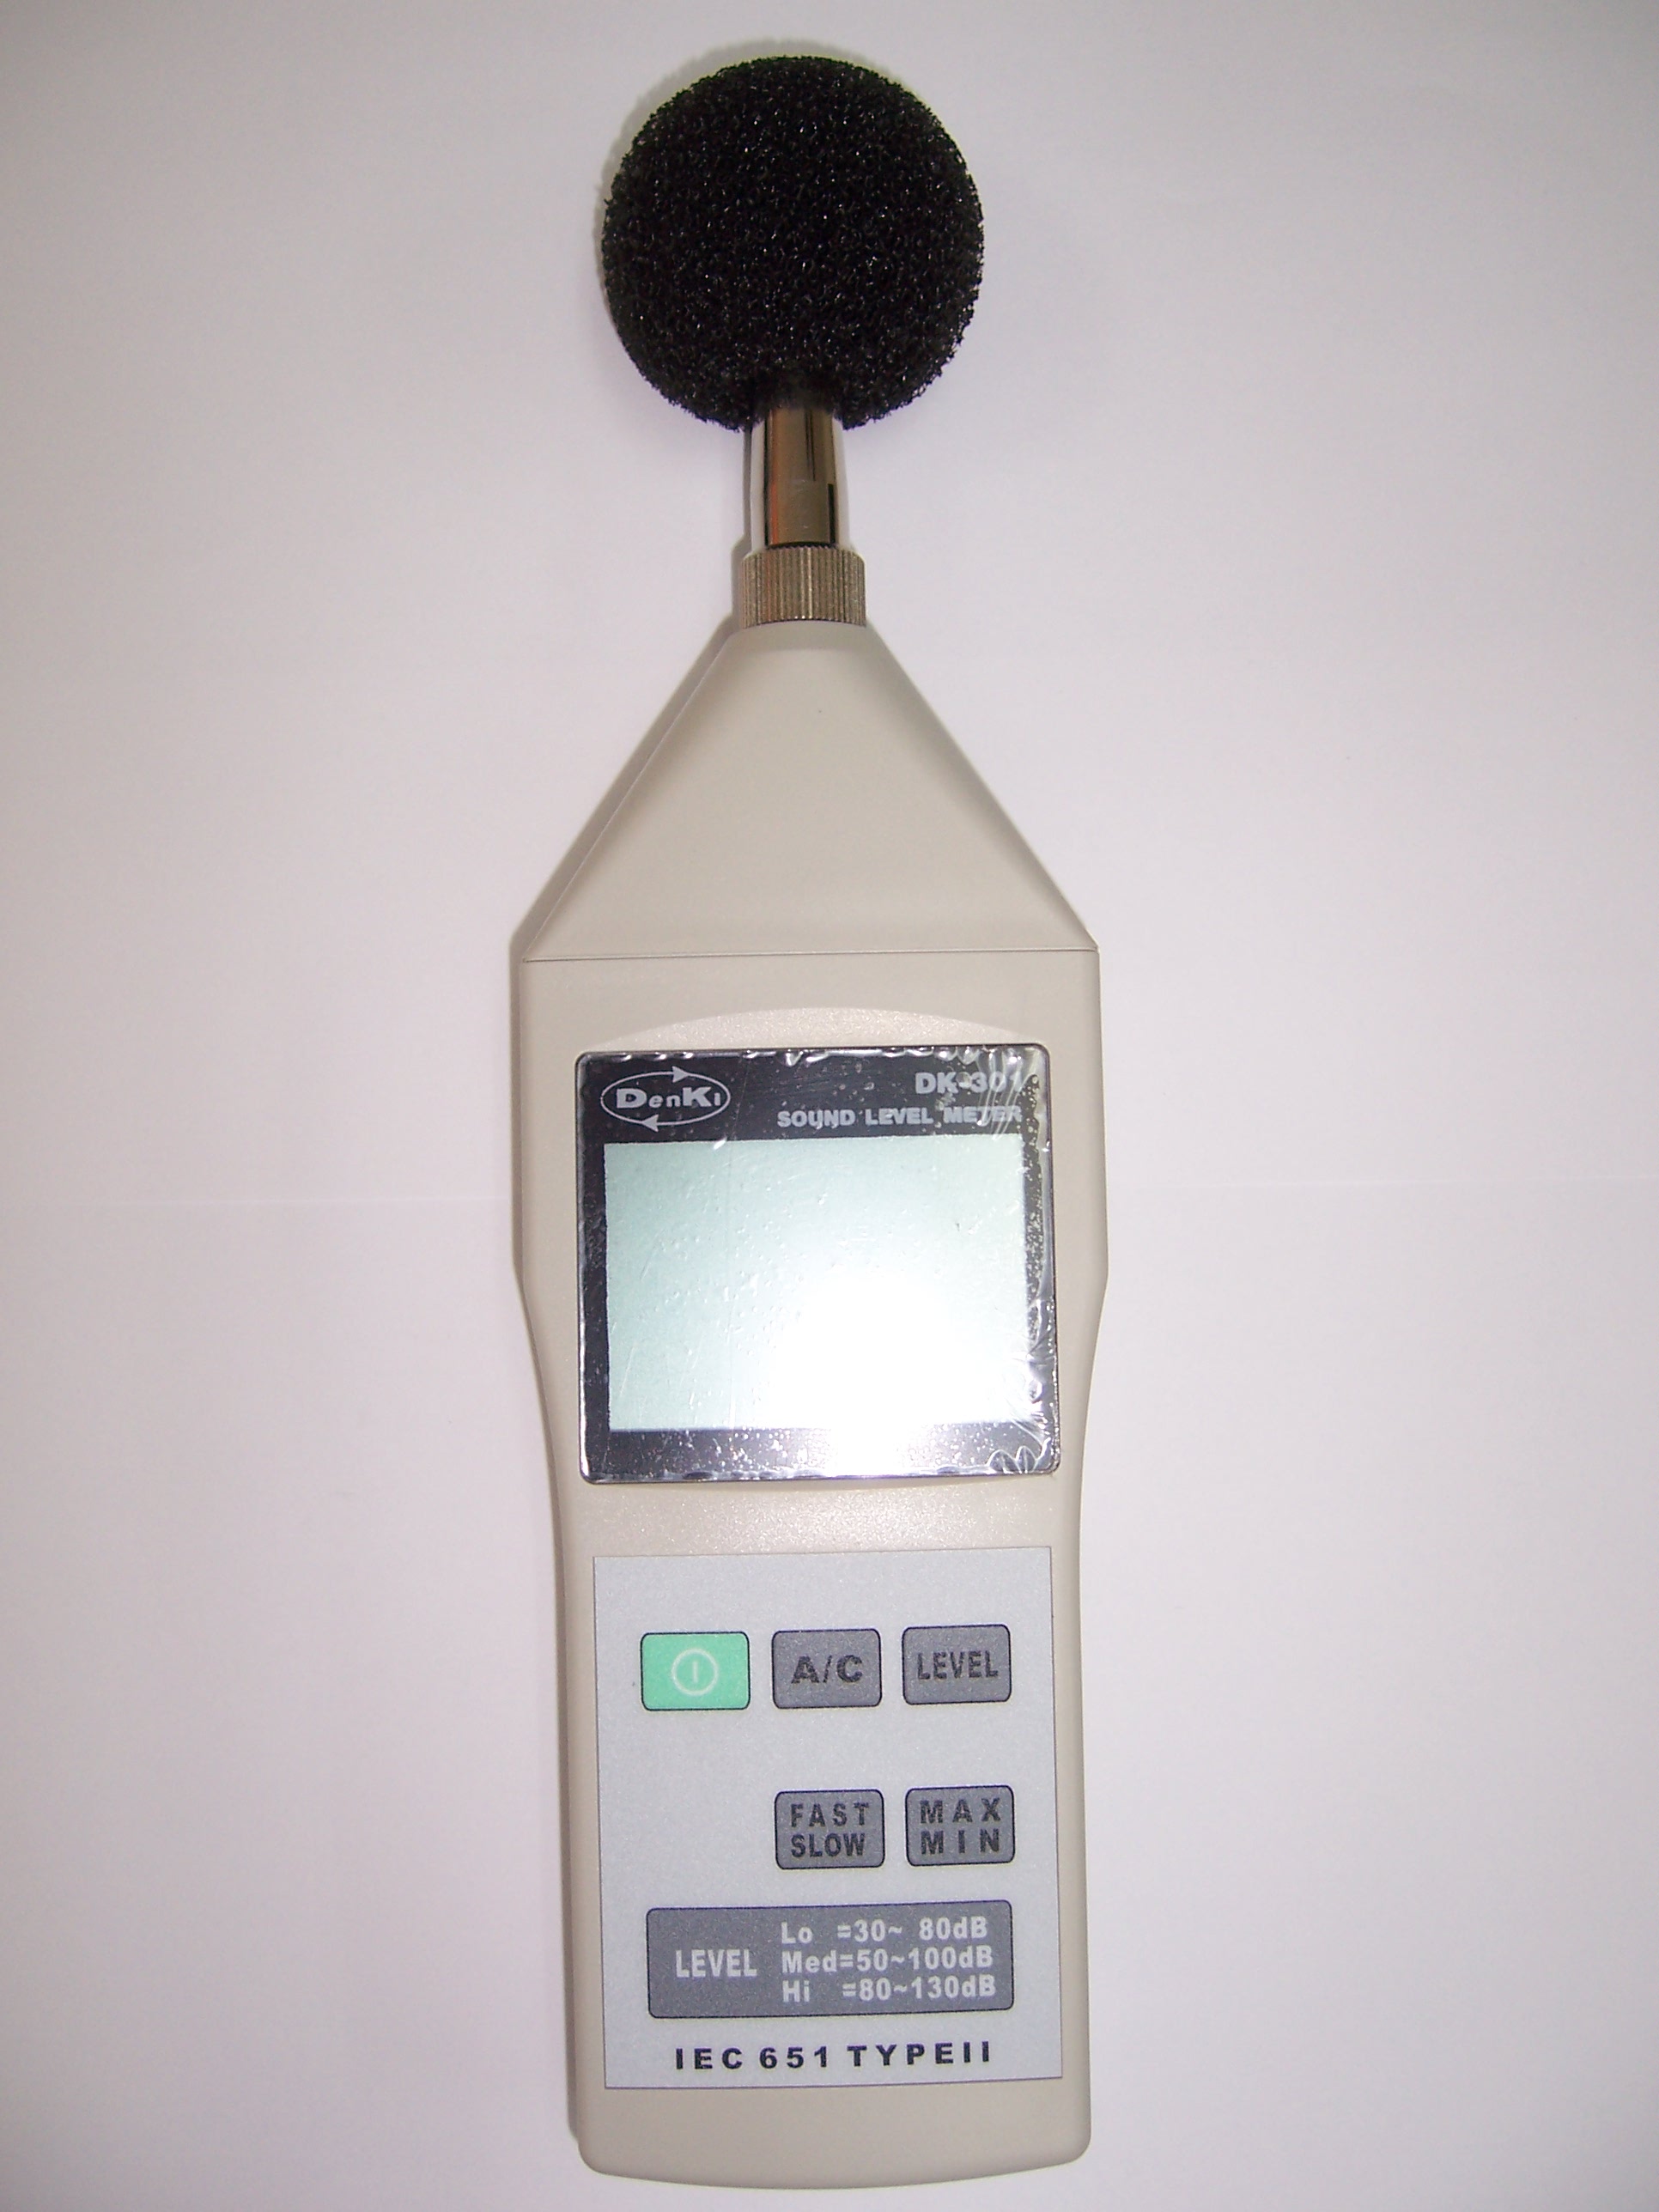 มิเตอร์วัดระดับเสียง Sound Level Meter รุ่น DK-301